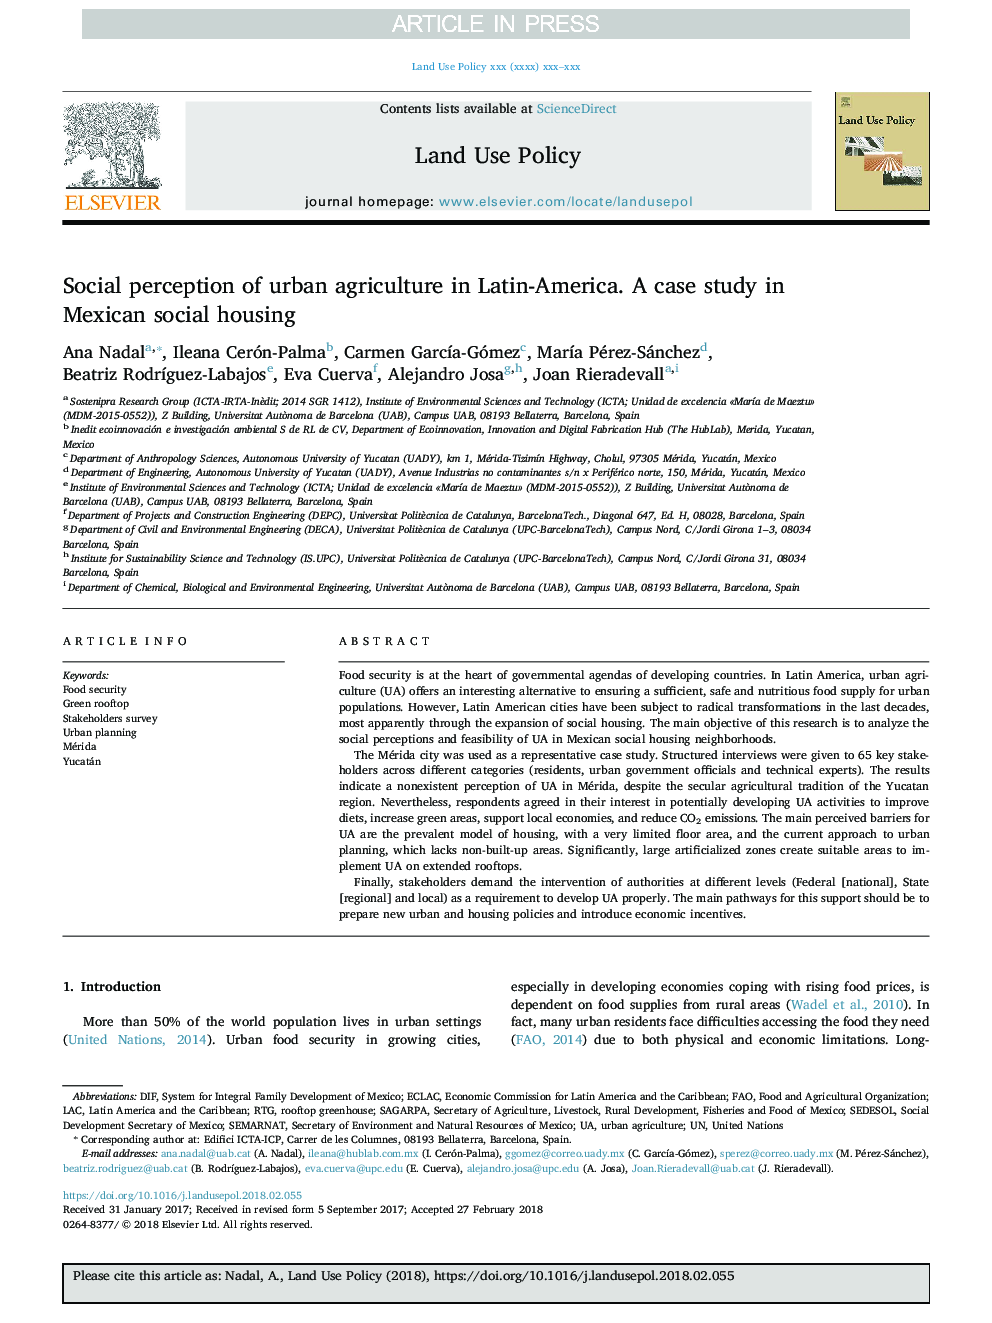 ادراک اجتماعی کشاورزی شهری در آمریکای لاتین. یک مطالعه موردی در مسکن اجتماعی مکزیک 